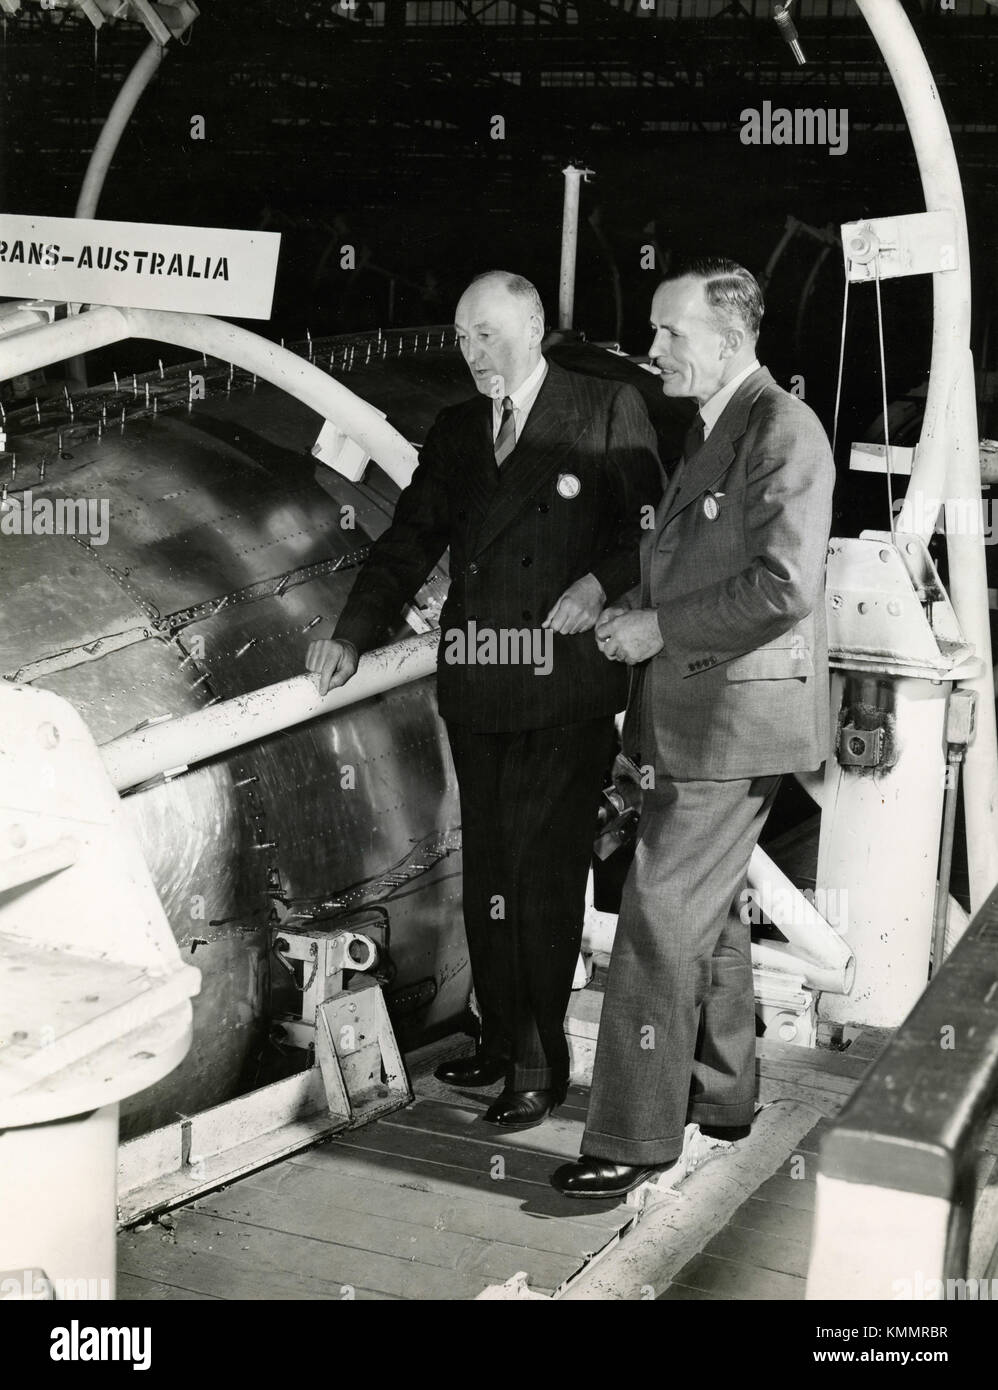 A.W. Coles et Lester Cerveau, président et directeur général d'Trans-Australia Airlines, 1947 Banque D'Images